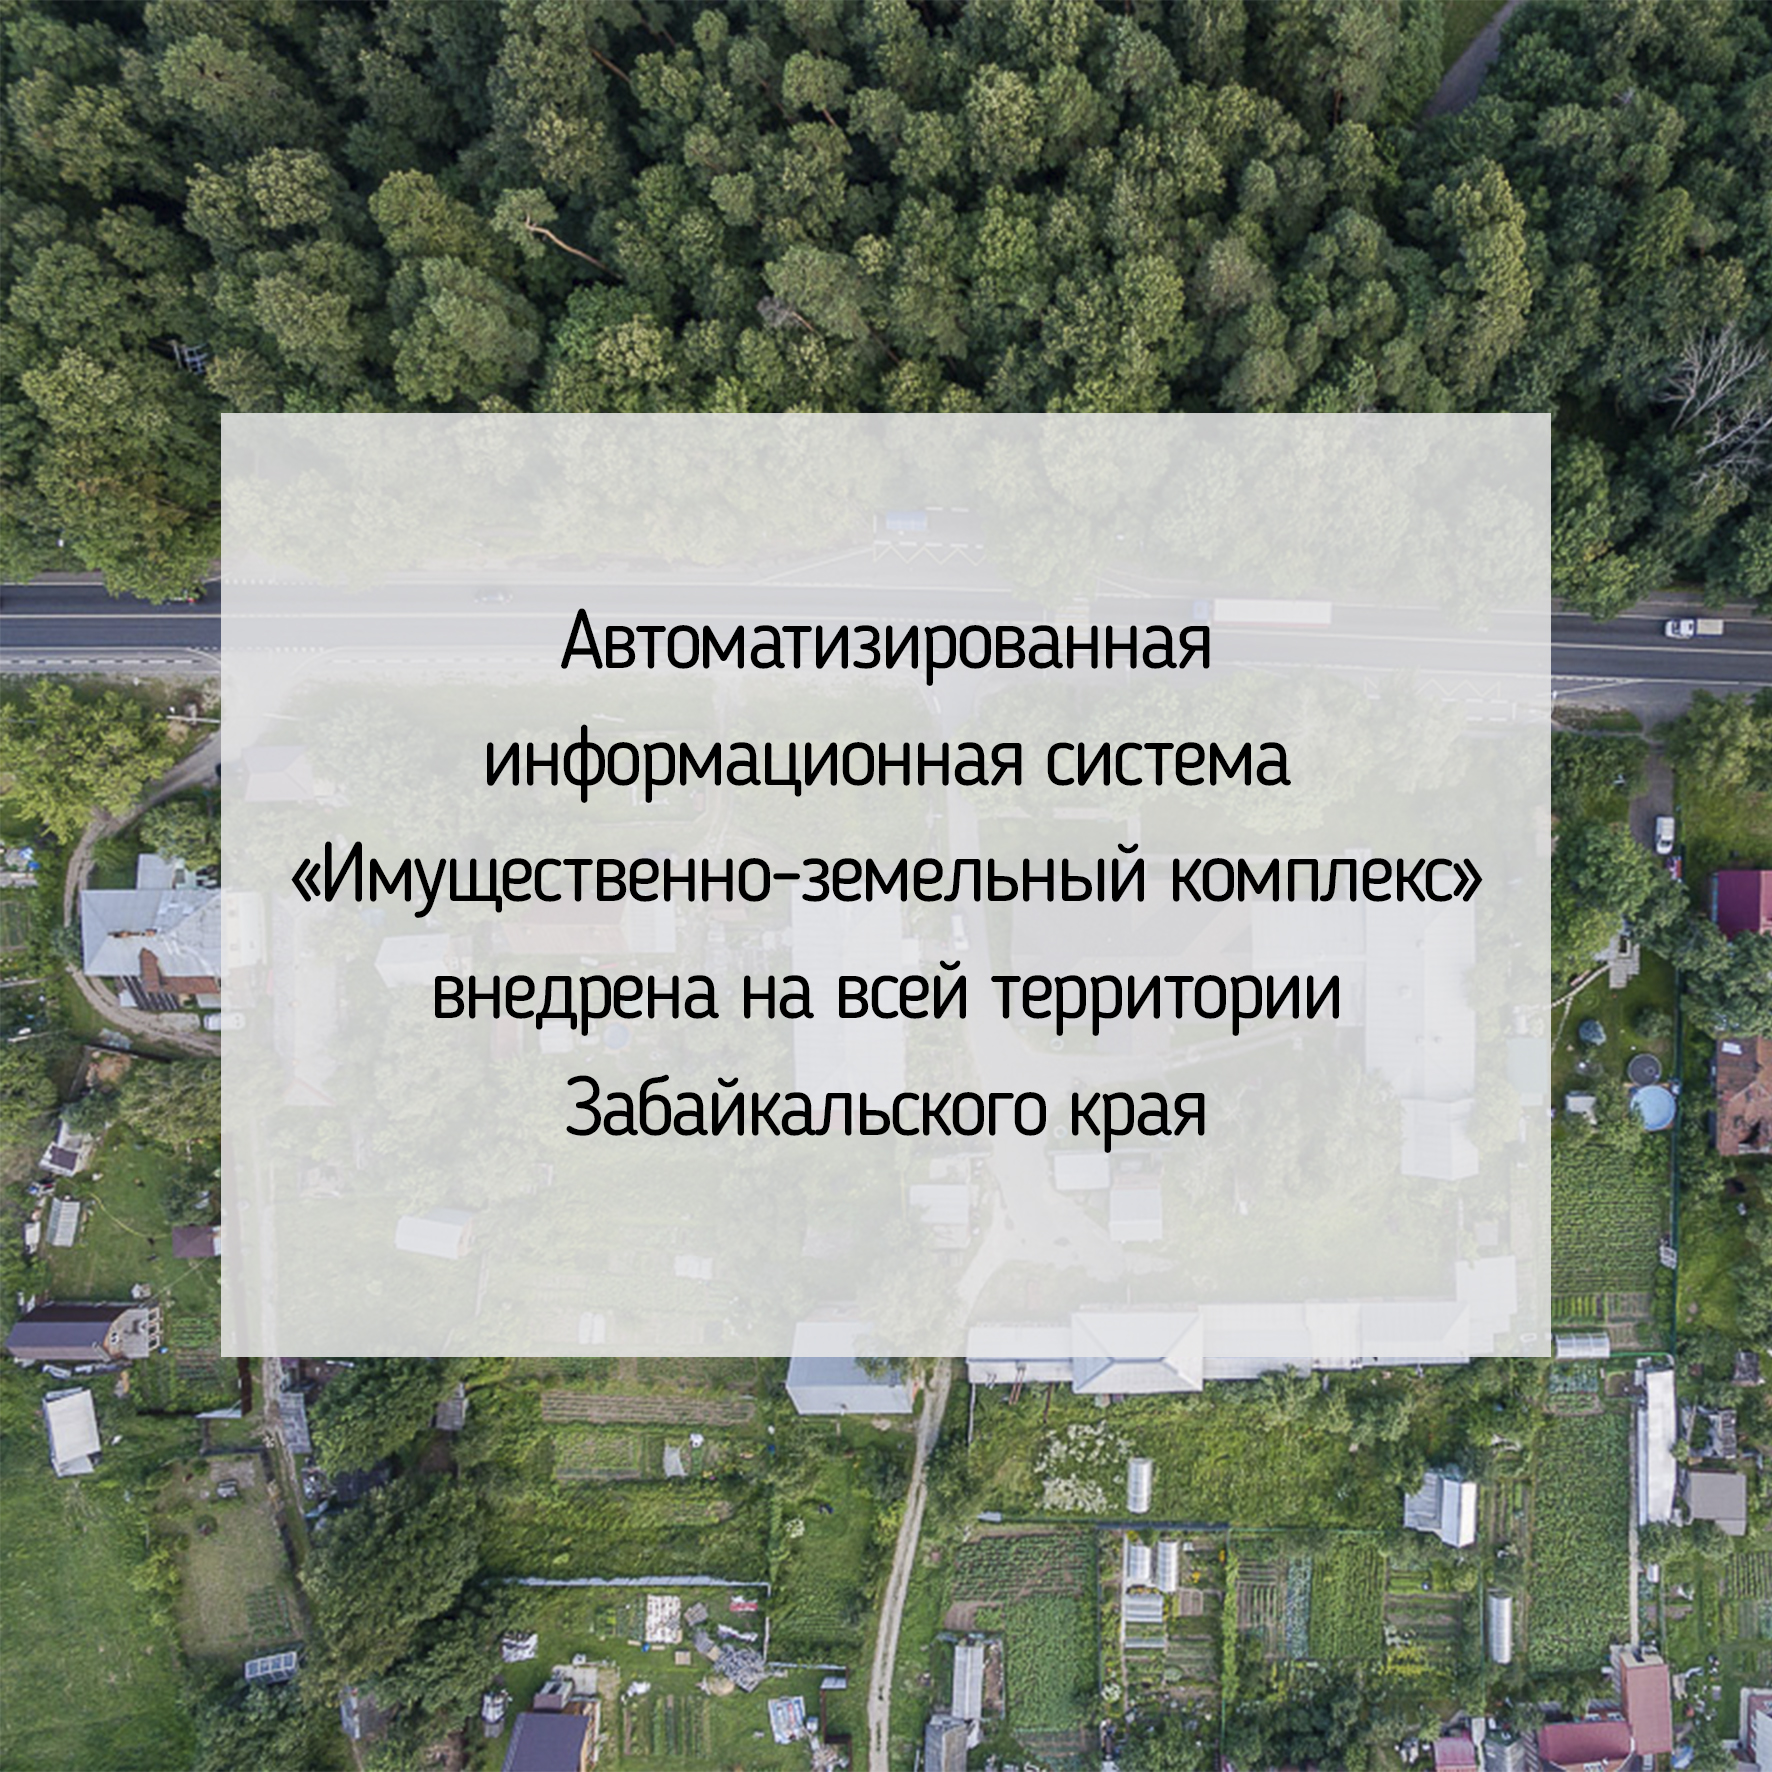 Автоматизированная информационная система «Имущественно-земельный комплекс» внедрена на всей территории Забайкальского края